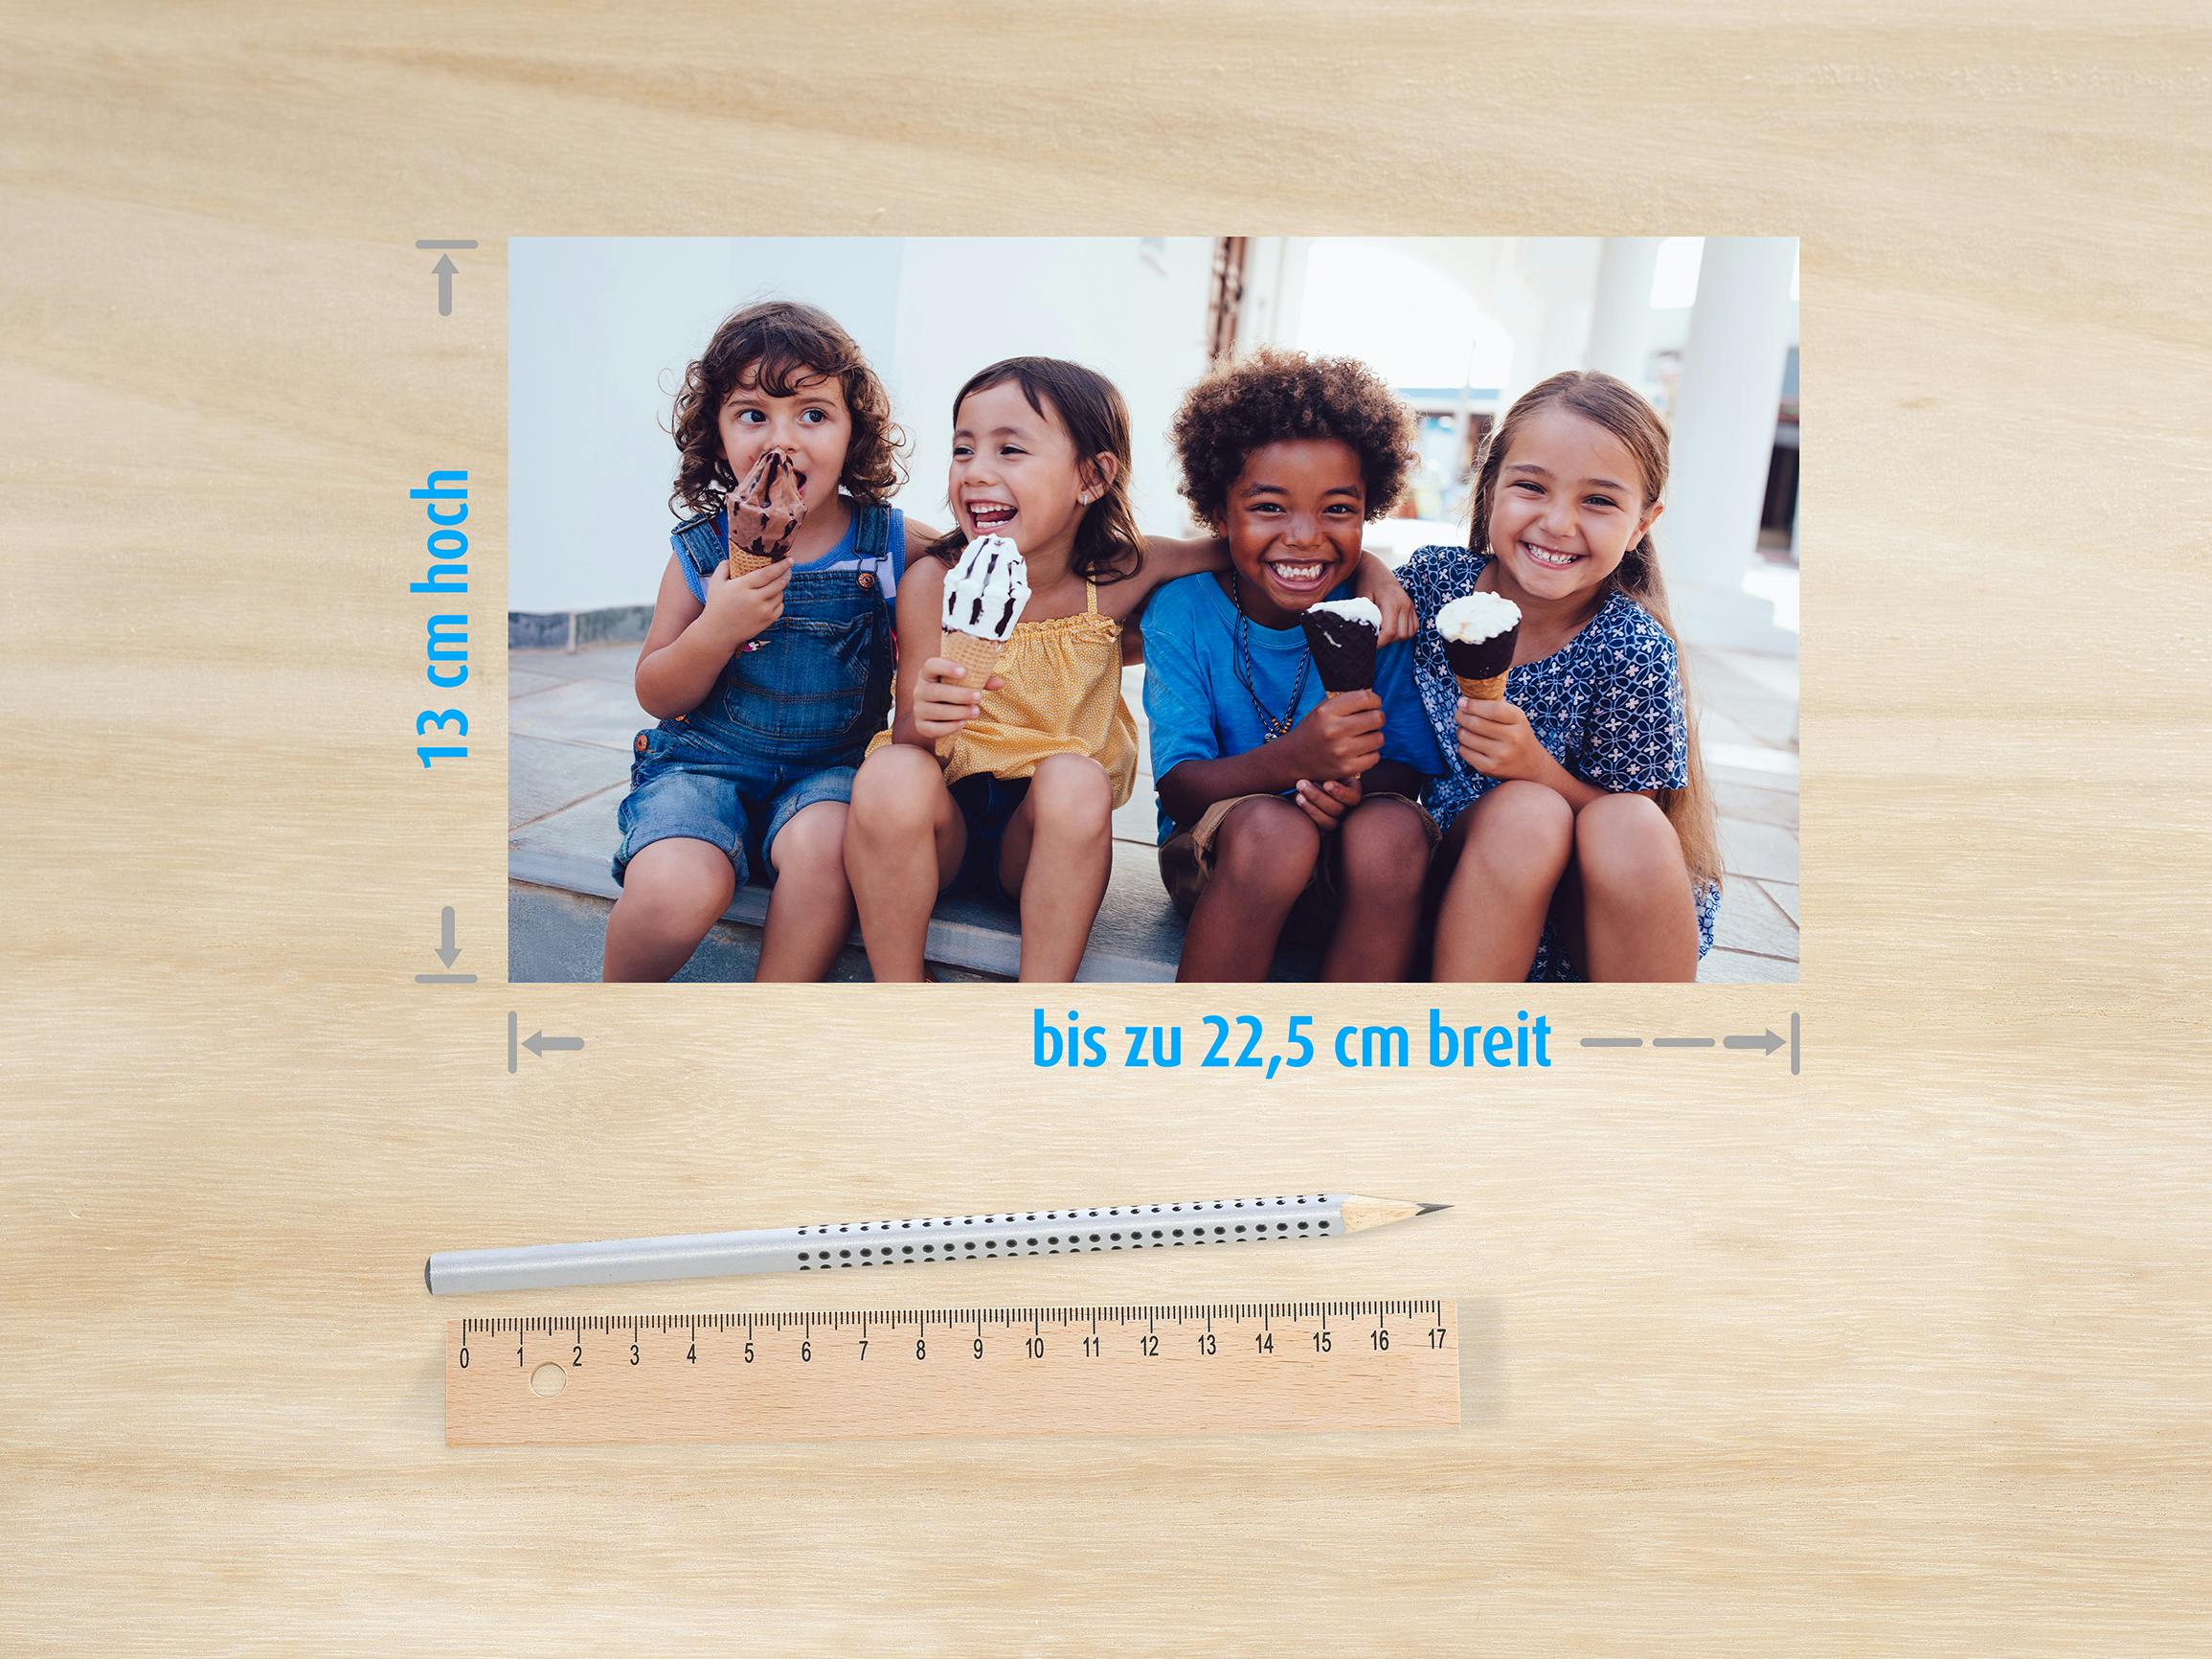 Foto auf einem Tisch von Kindern mit den Maßen 13x22,5cm